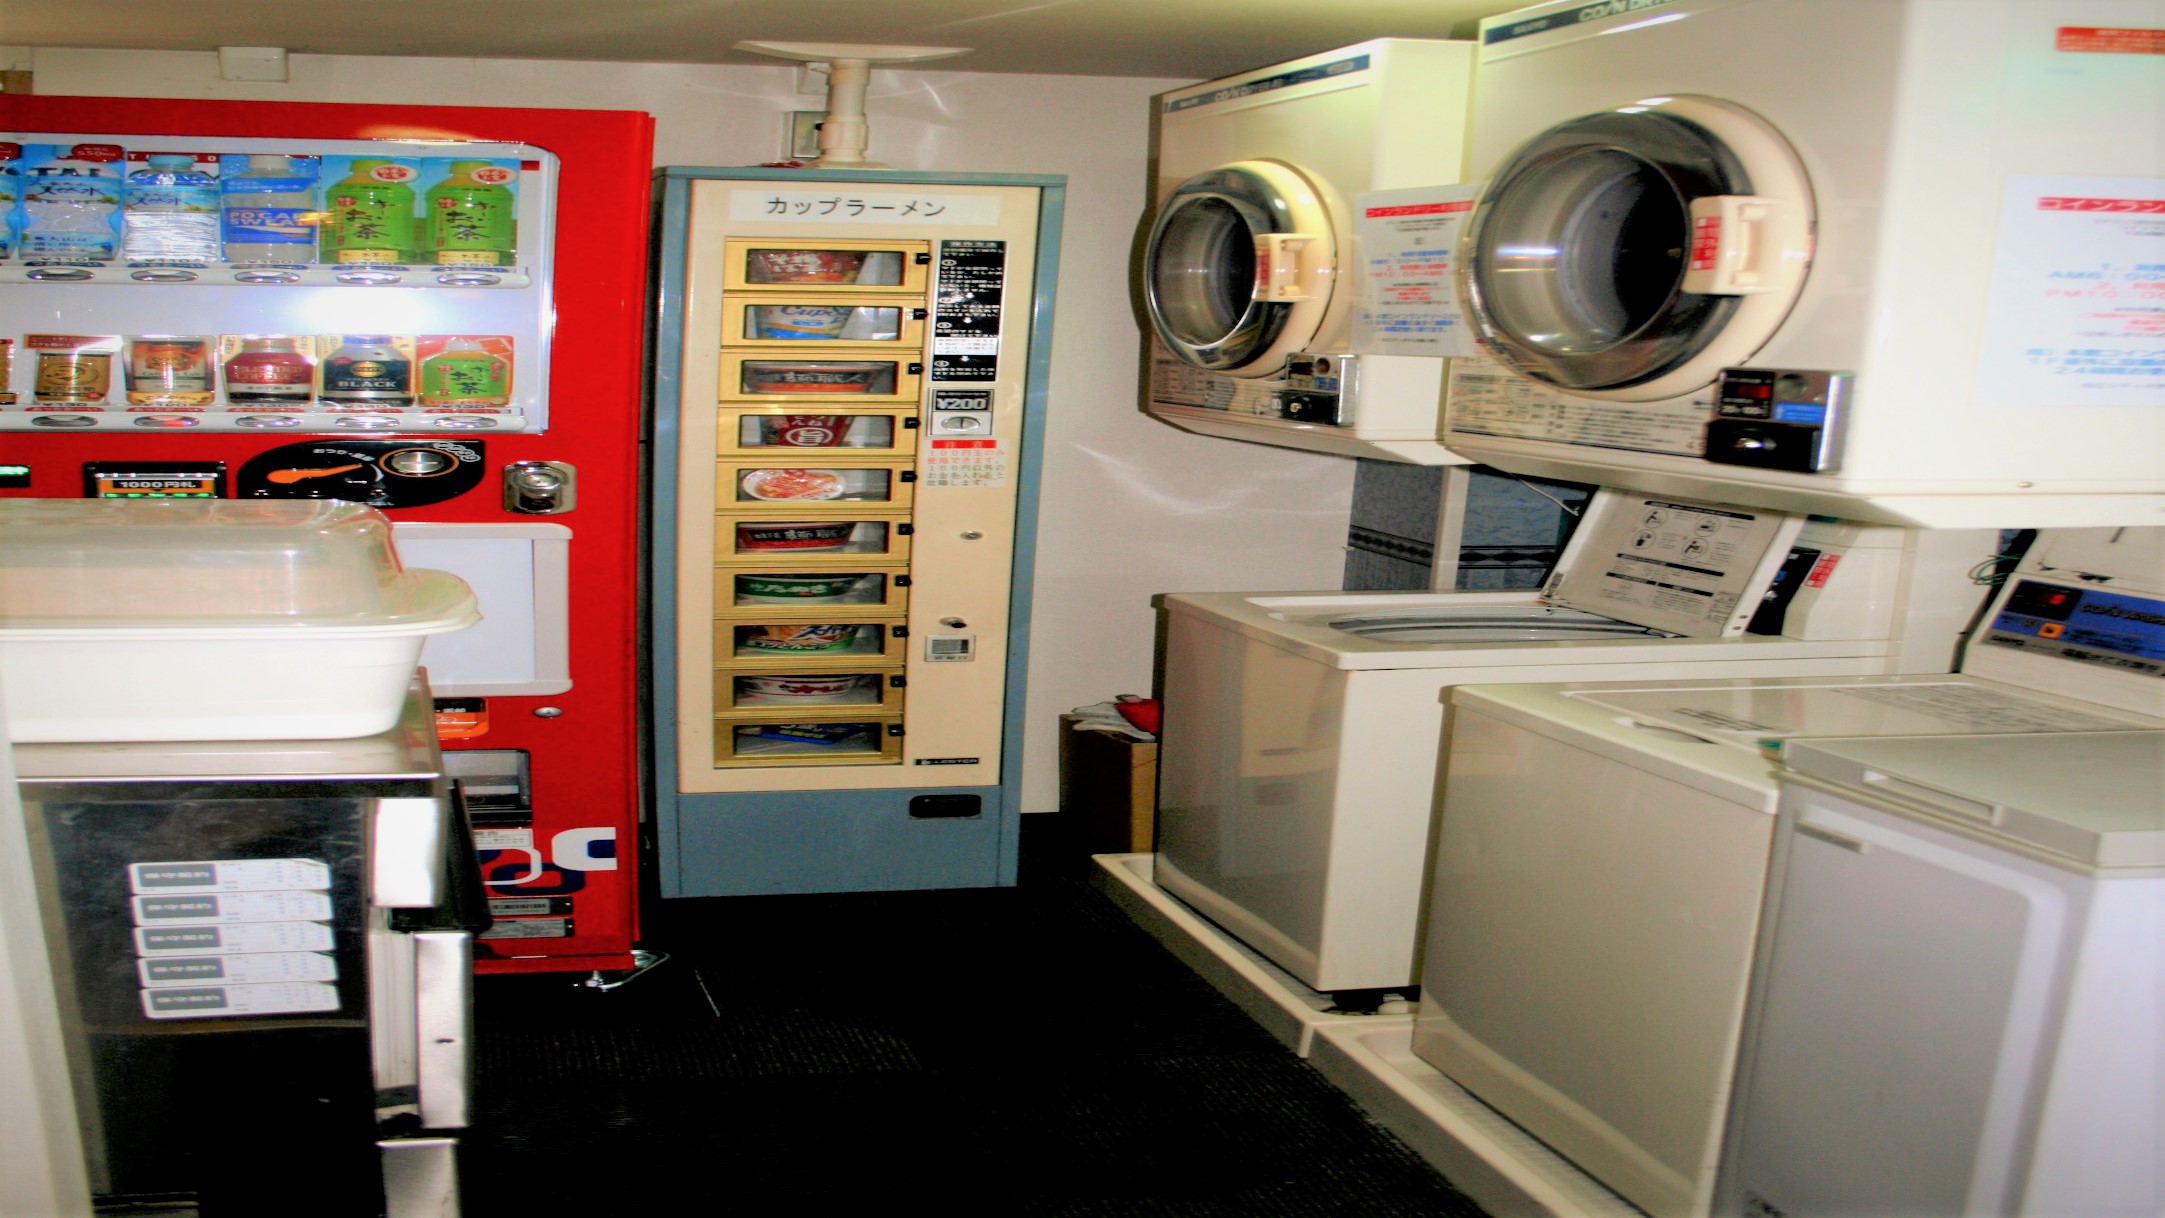 ２階に自動販売機・電子レンジ・共用冷凍庫・製氷機・コインランドリー